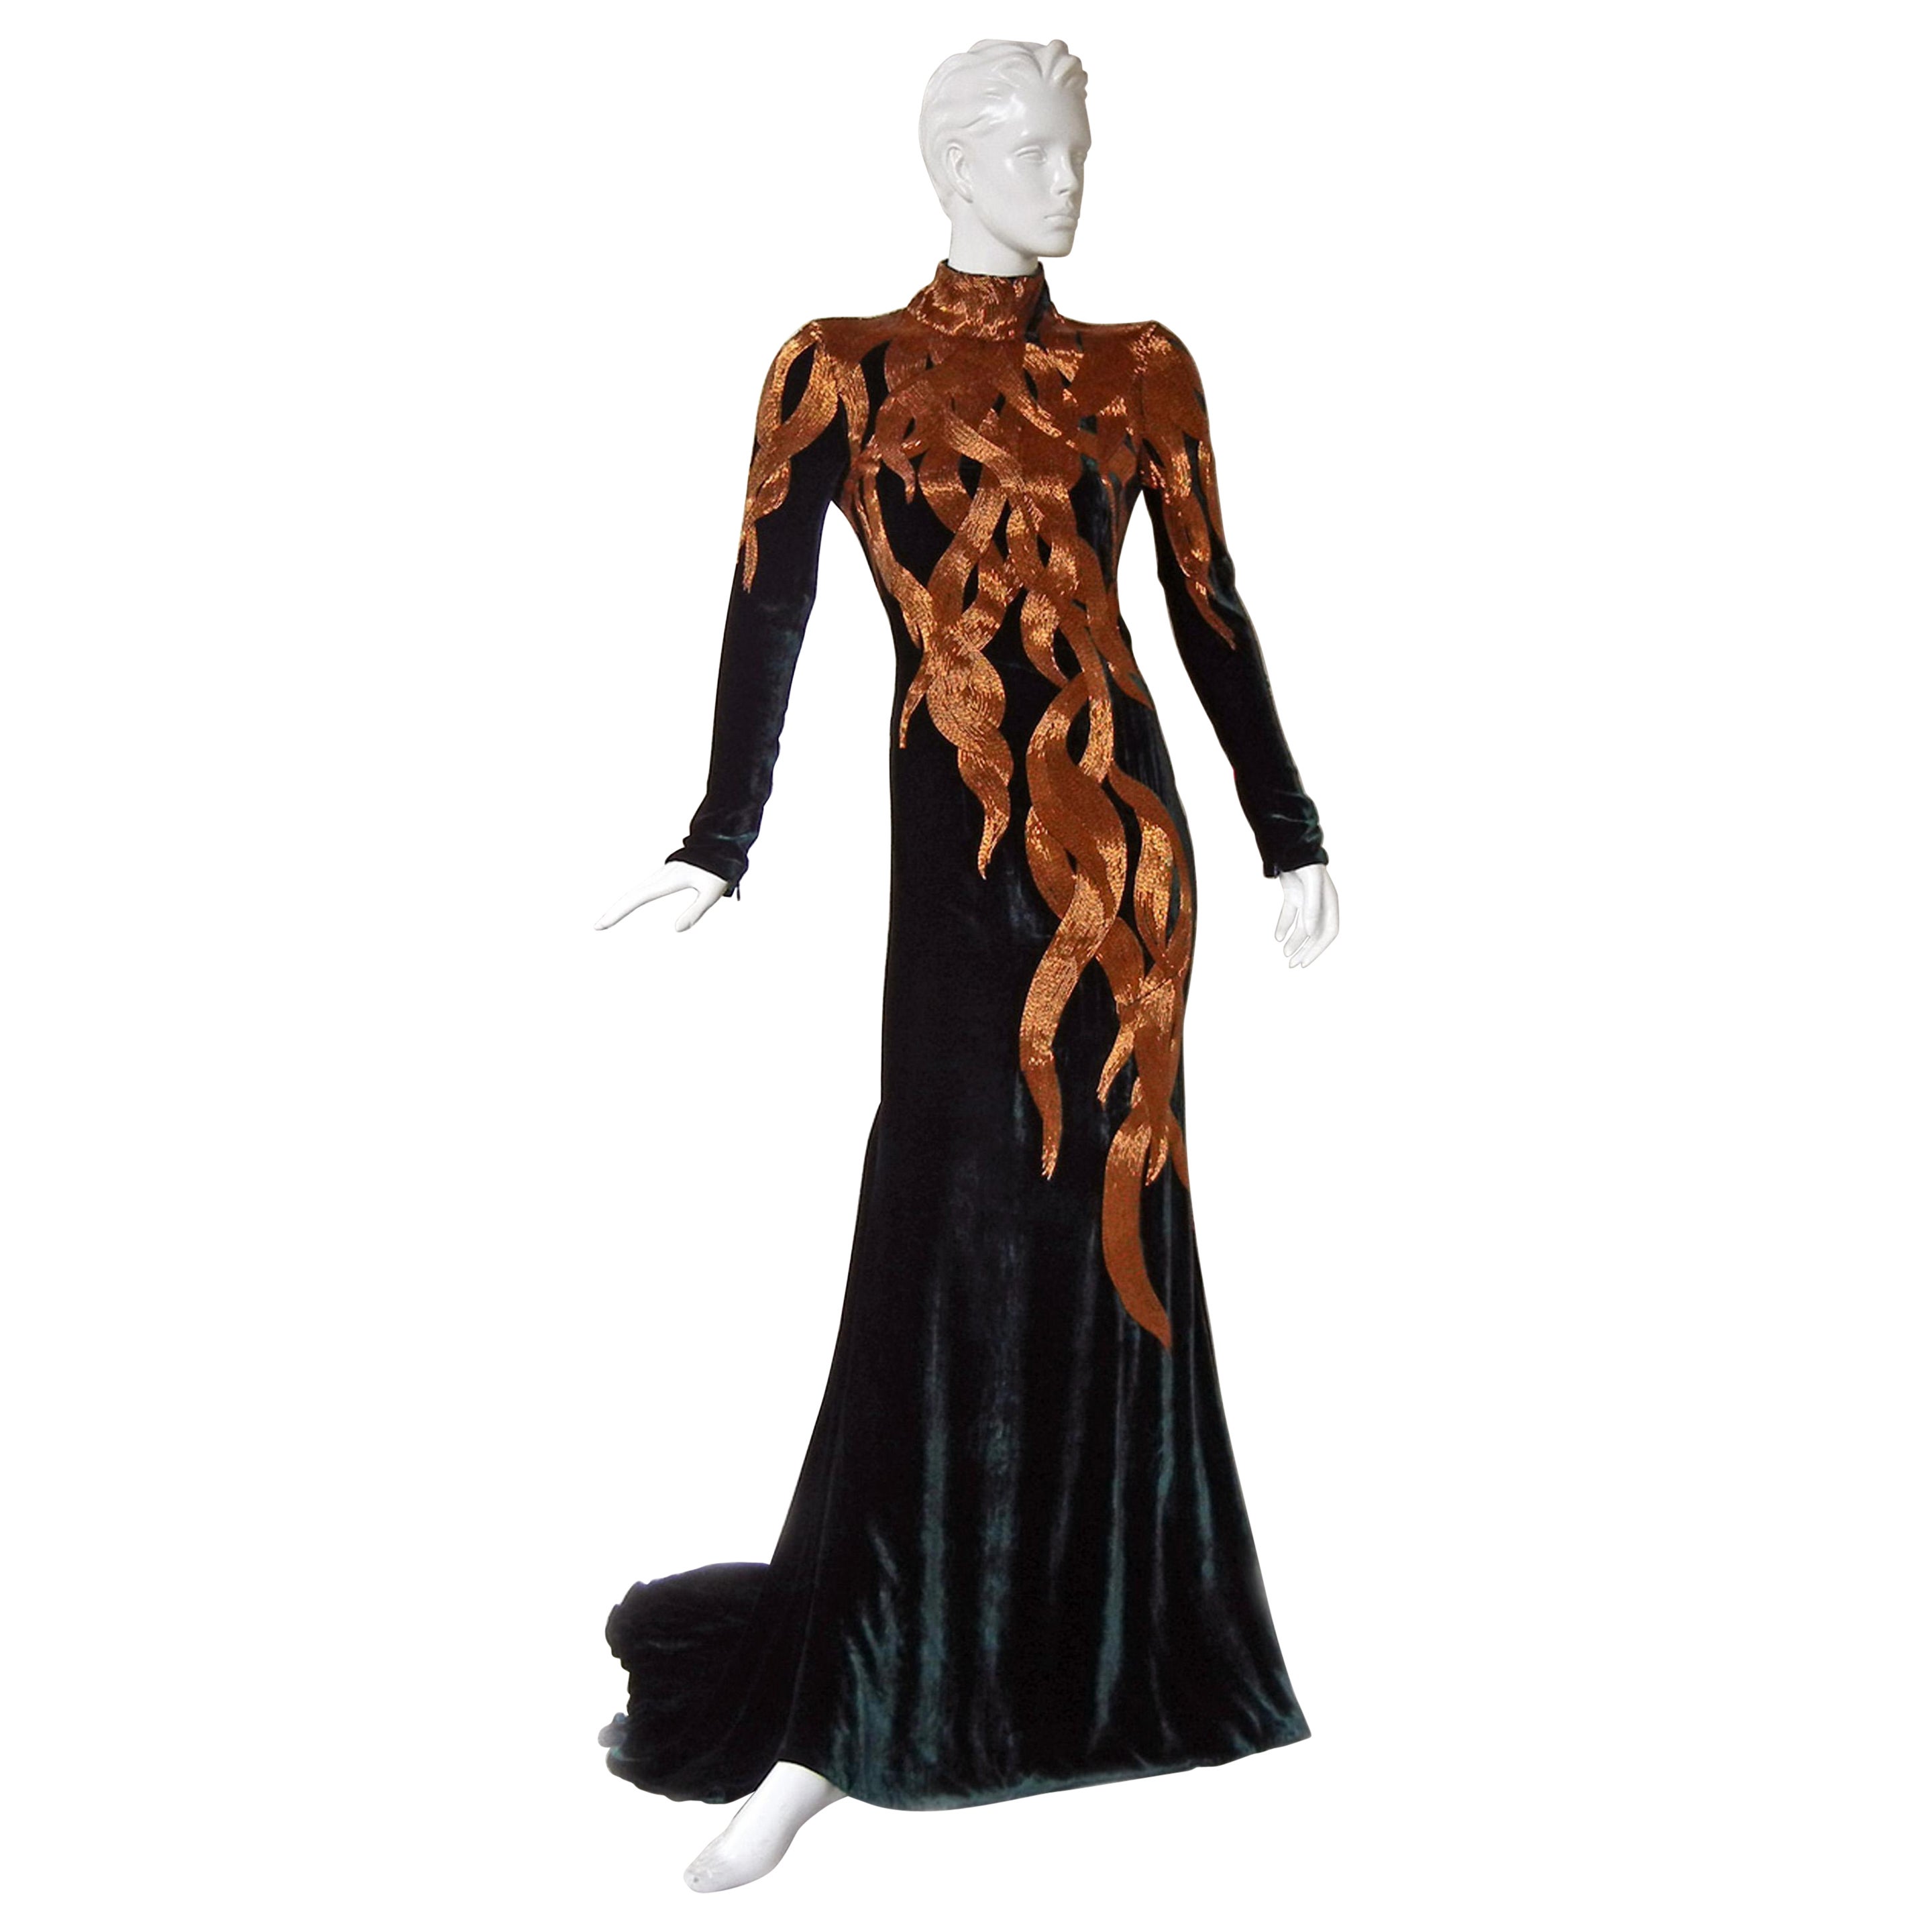 The NWT Alexander McQueen 2007 Velvet Beaded Flame Gown  Entrance Maker! 